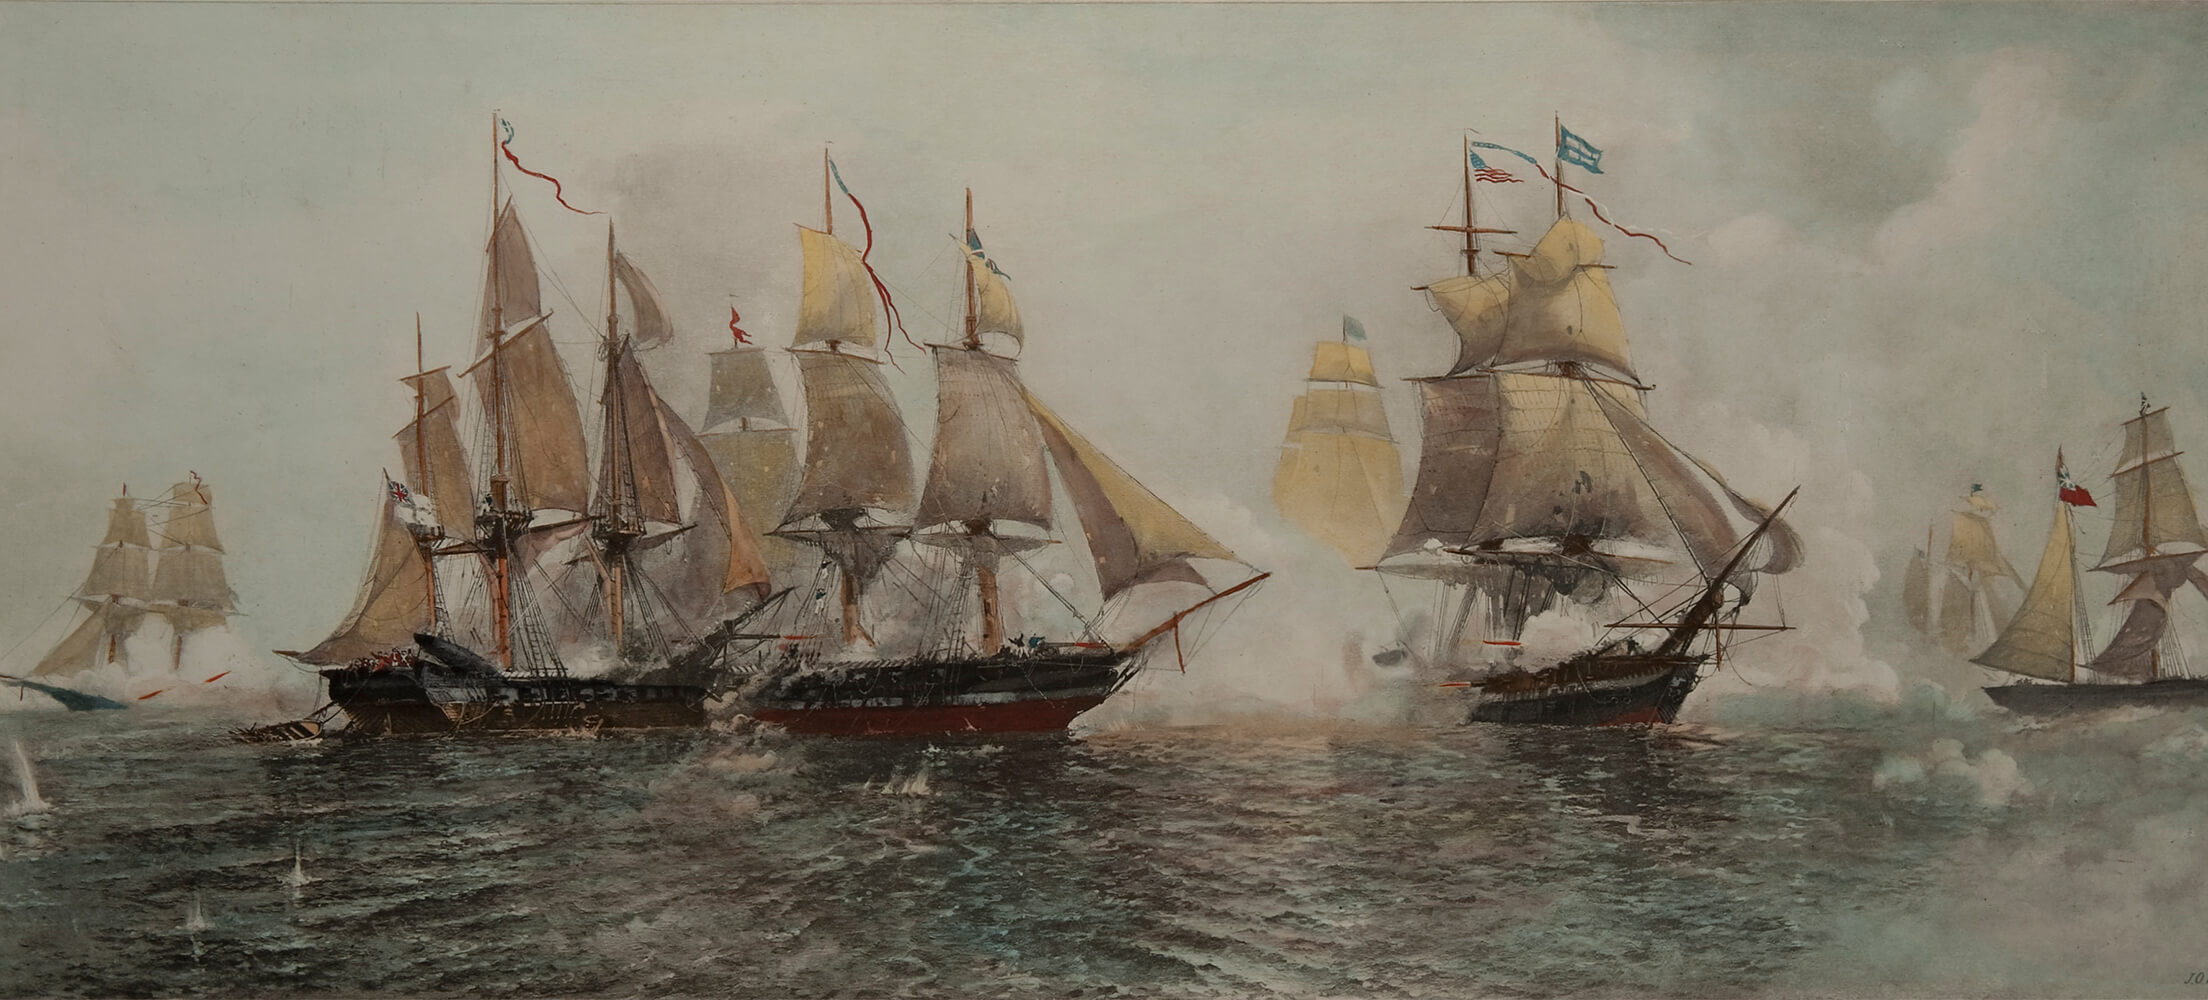 us navy in war of 1812